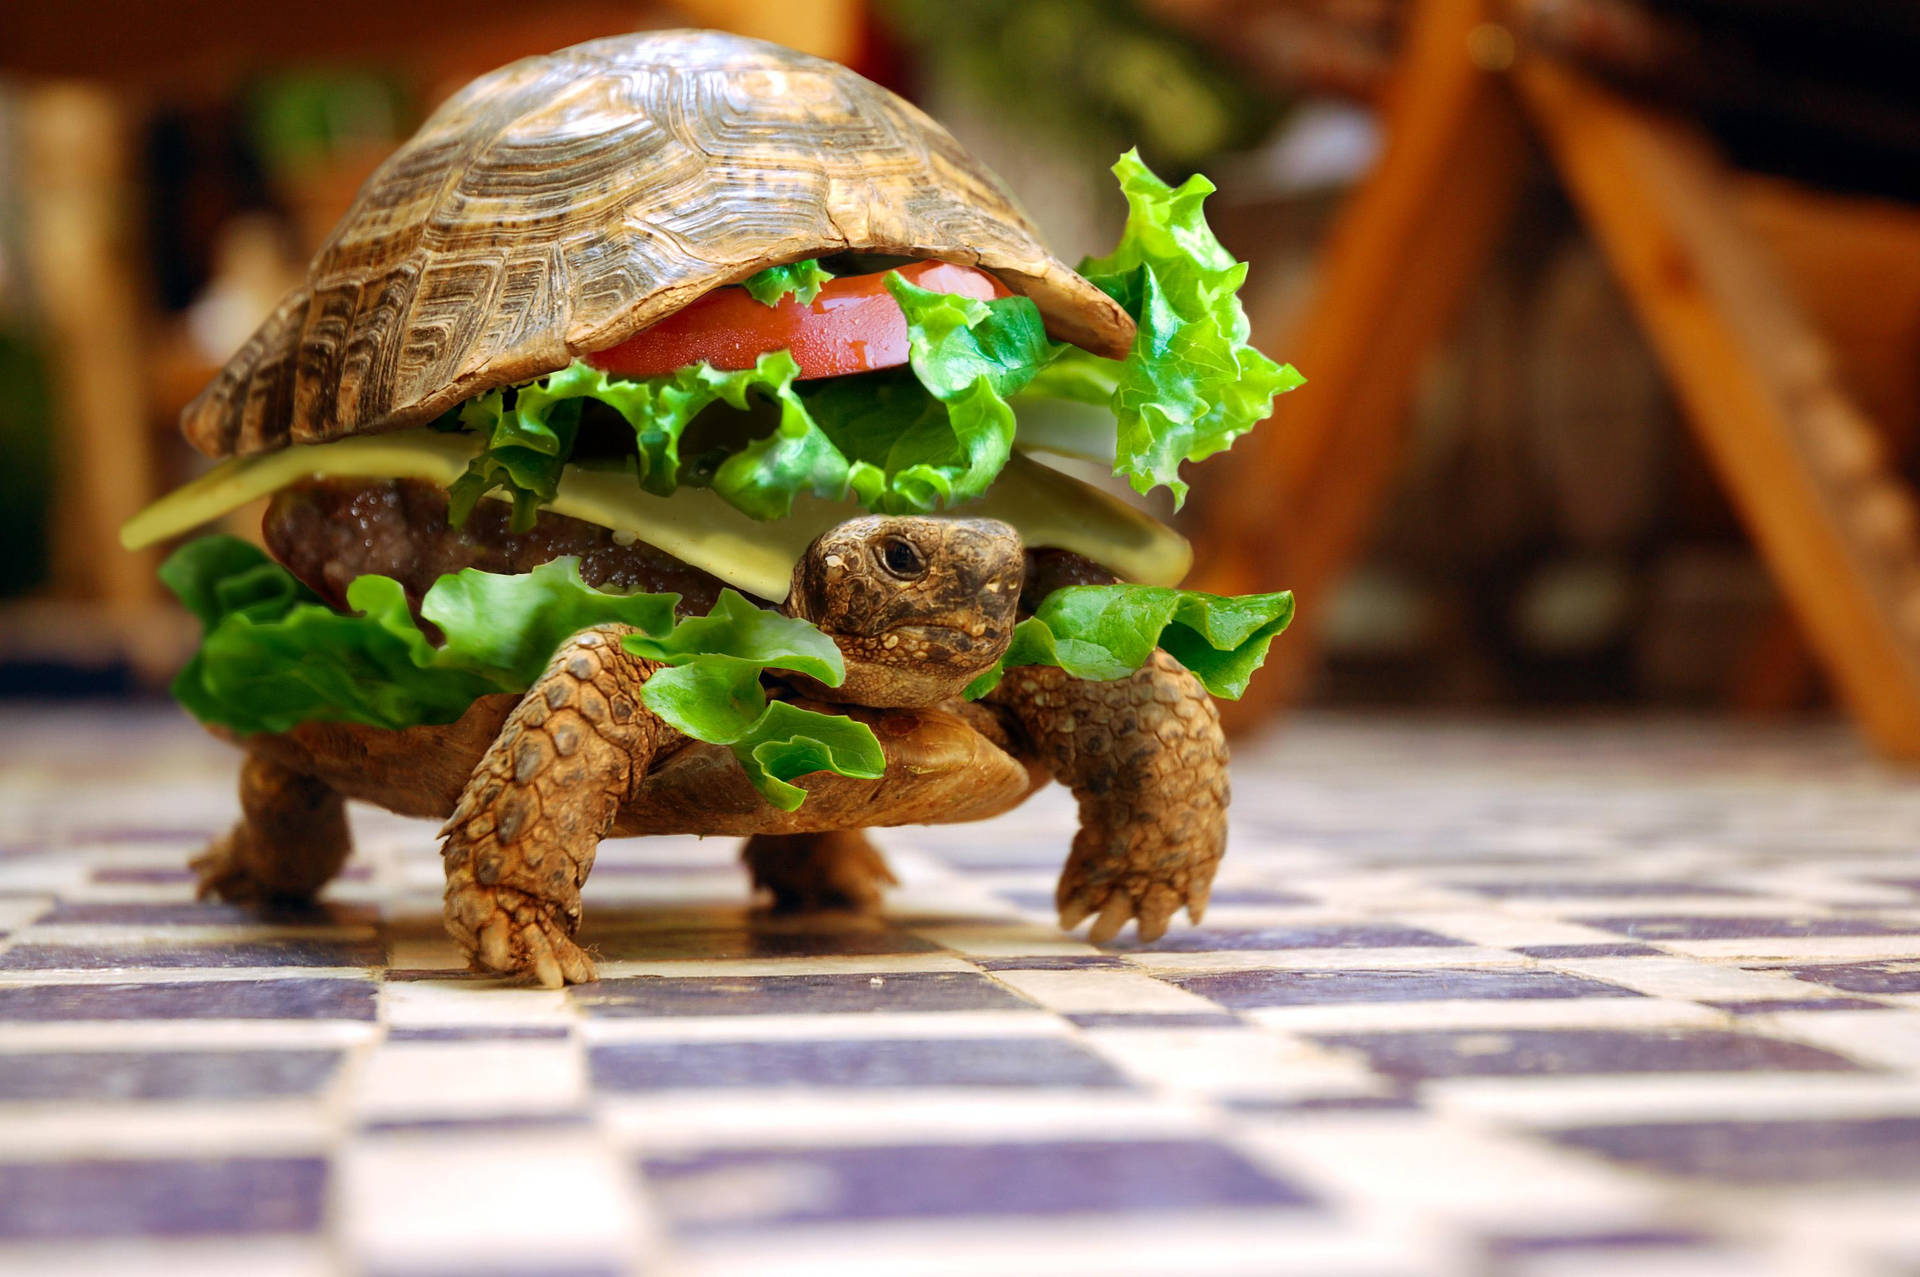 Turtle sandwich image wallpaper.